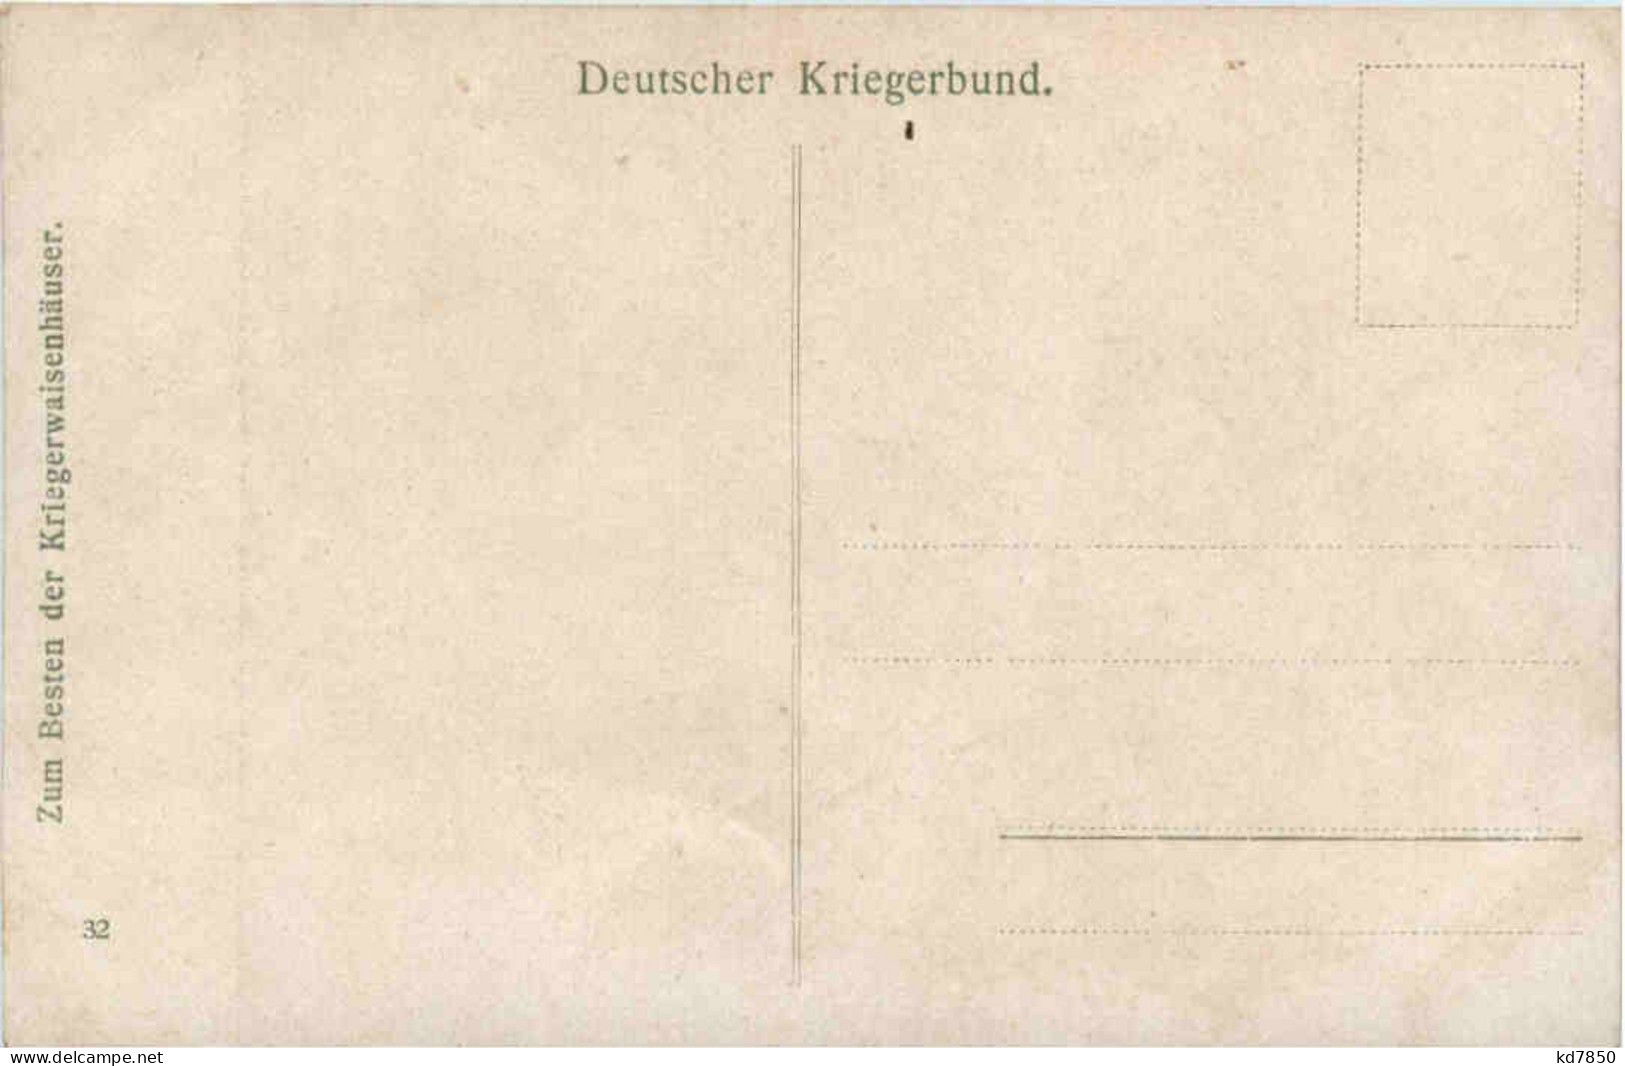 Auguste Viktoria - Deutsche Kaiserin - Case Reali